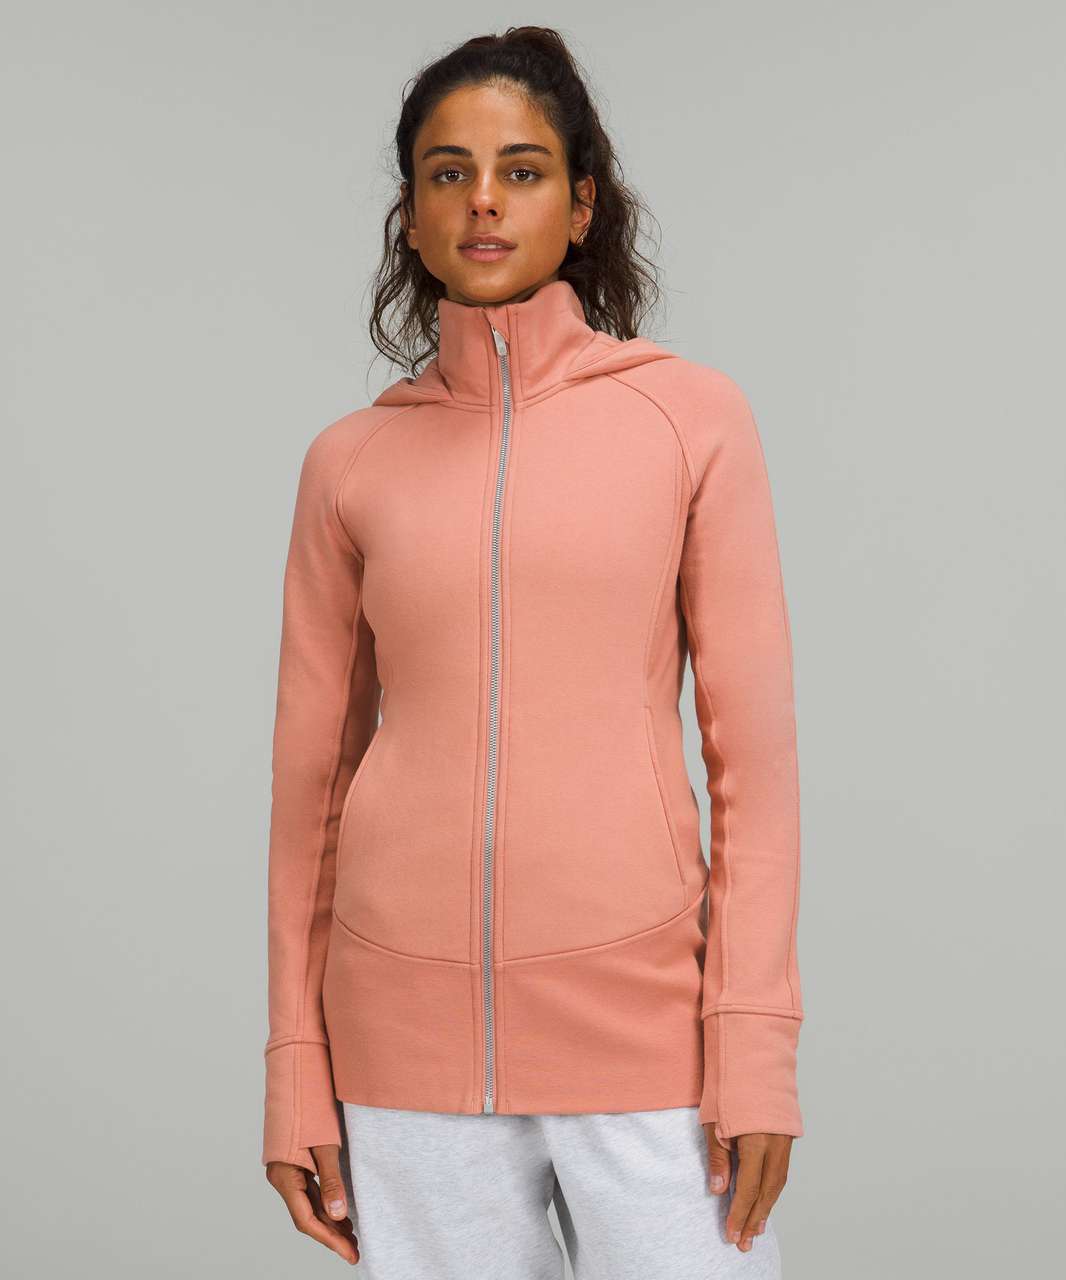 Lululemon Textured Fleece Full-Zip Jacket - Pink Savannah - lulu fanatics